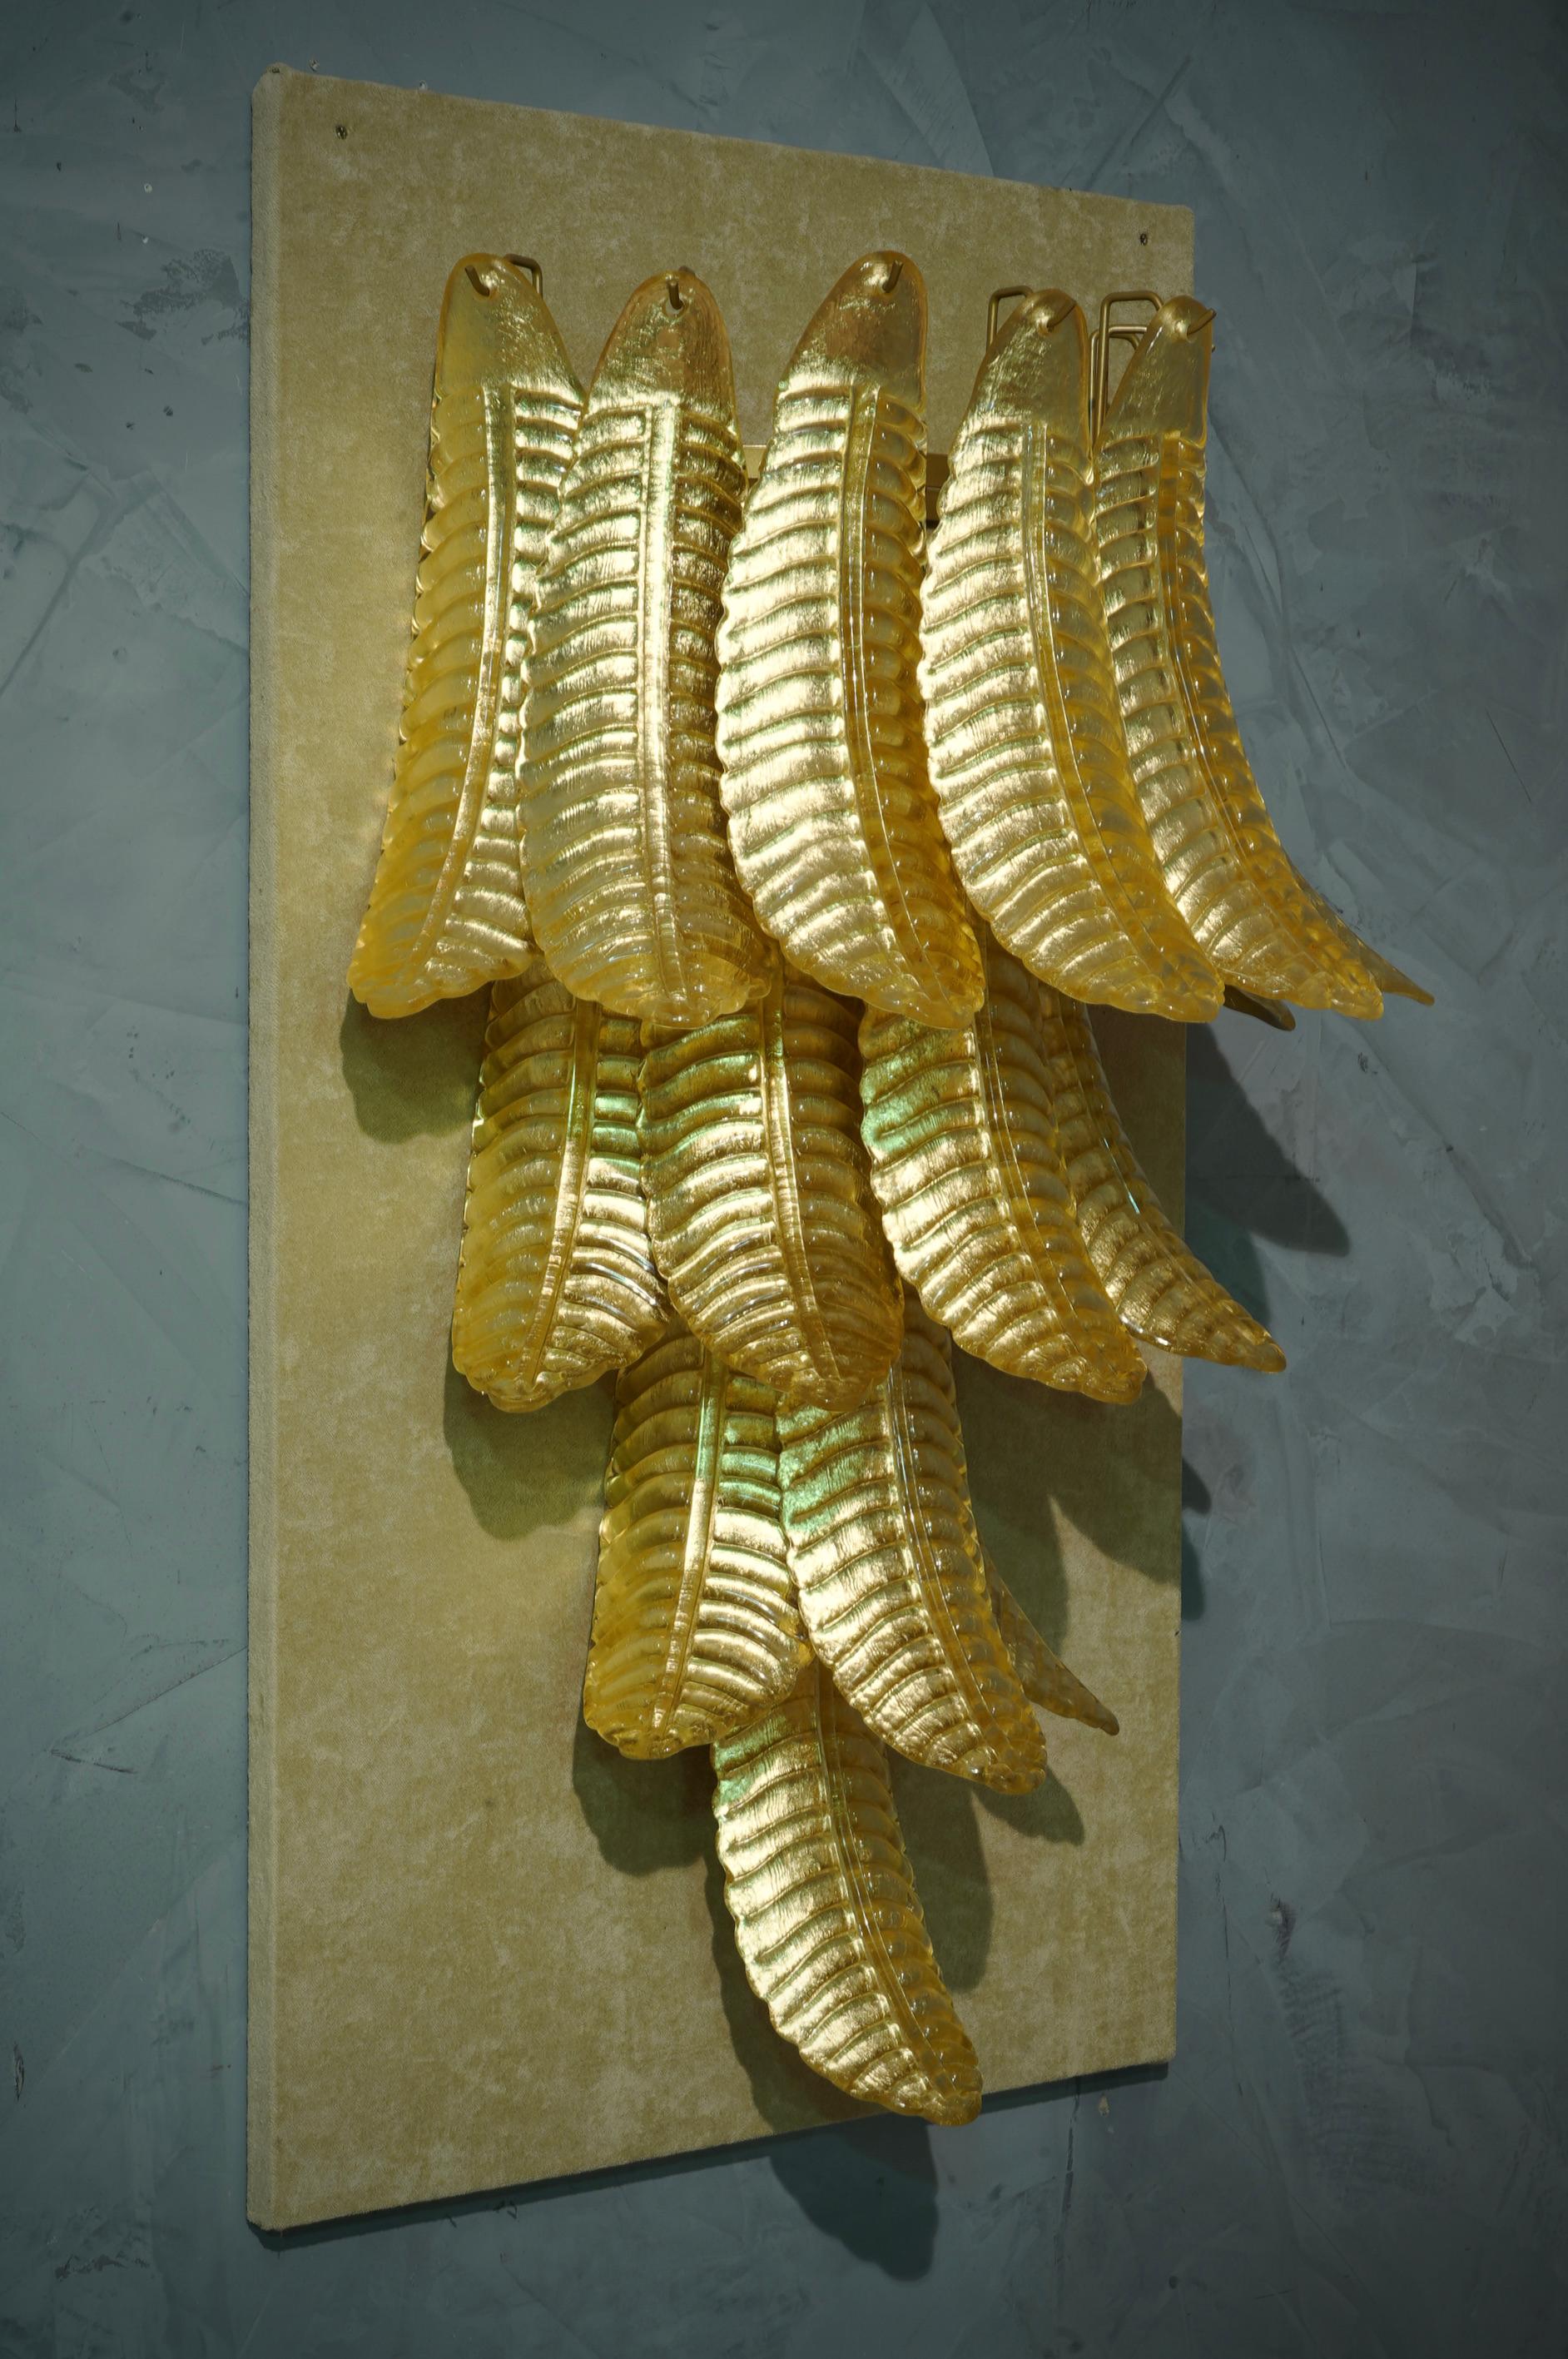 Seize belles feuilles en verre classique de Murano de couleur or. Un design riche pour une applique vraiment magnifique. Simple et élégant comme dans le style d'Eleg.

L'applique est composée d'une série de seize feuilles en verre de Murano de